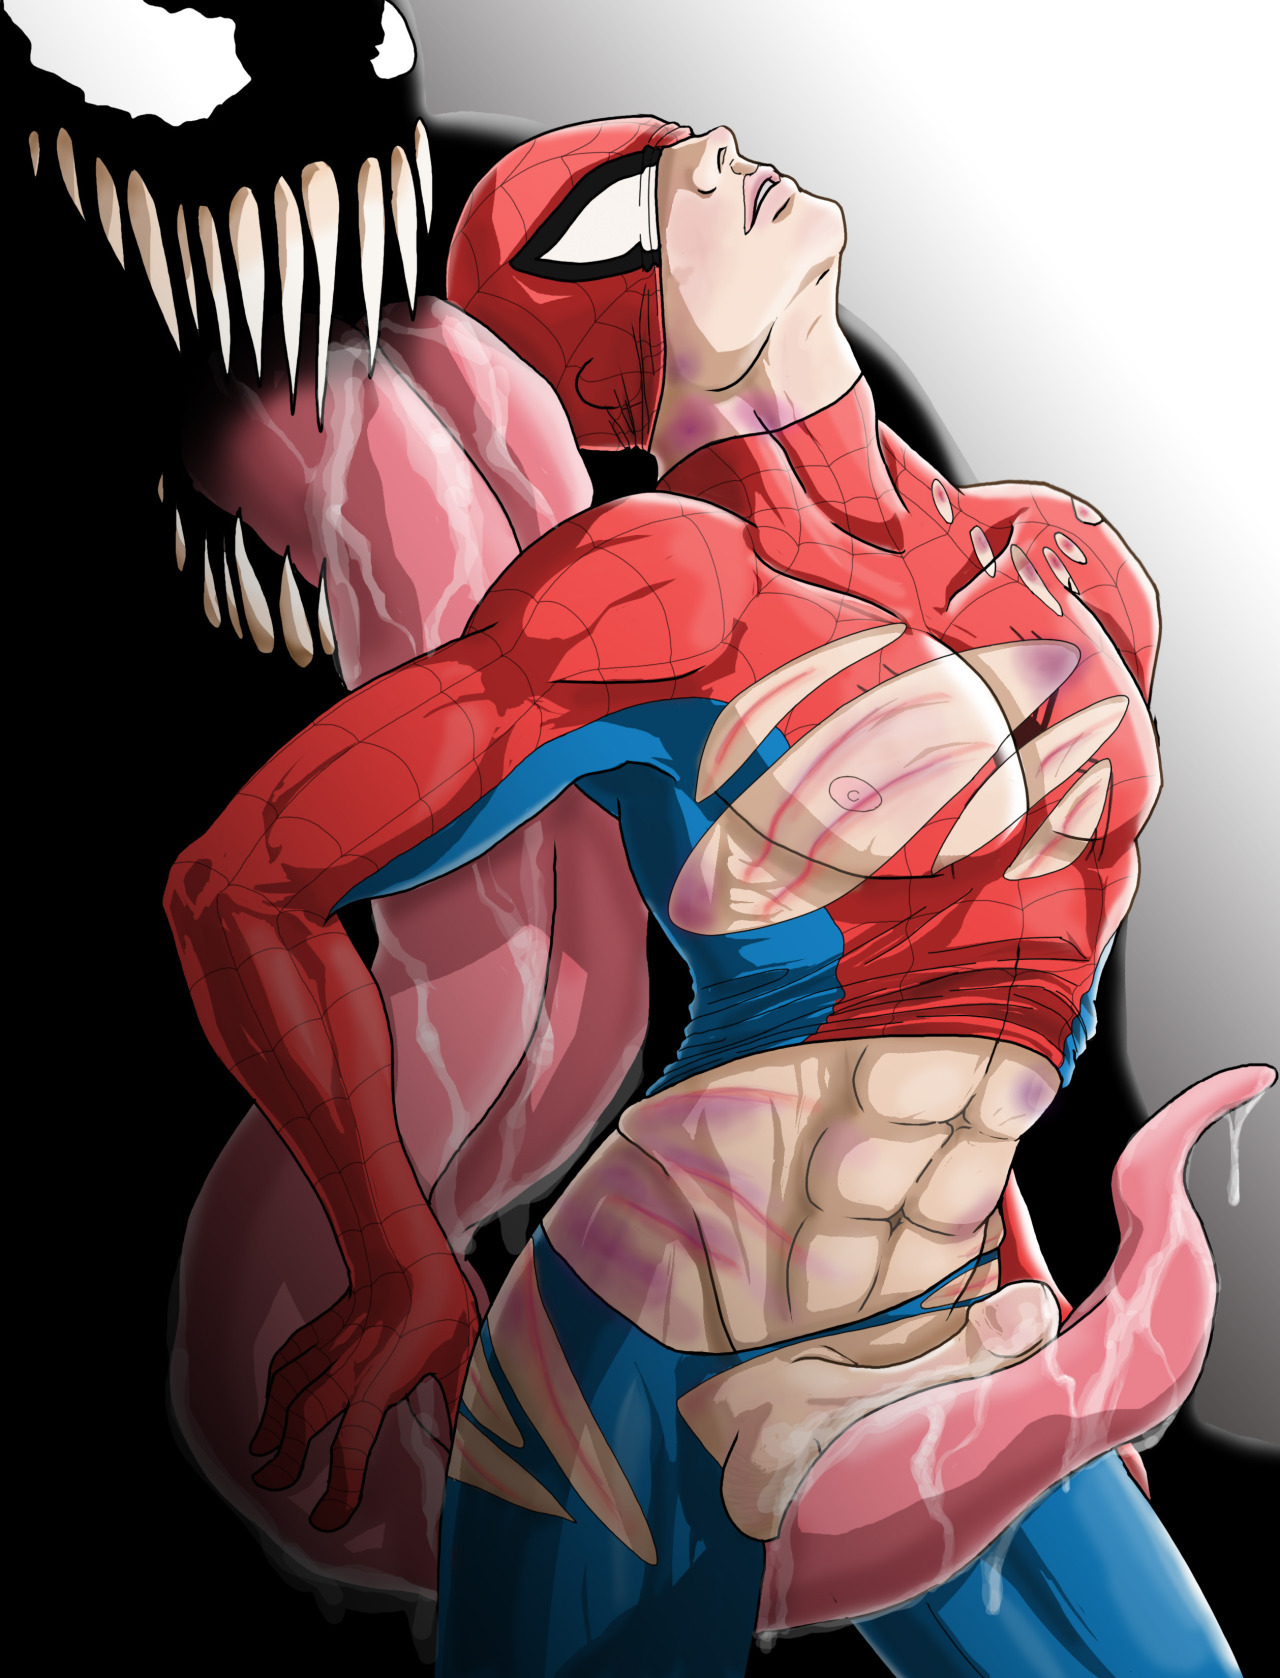 1280px x 1678px - Showing Media & Posts for Spider man x venom xxx | www.veu.xxx